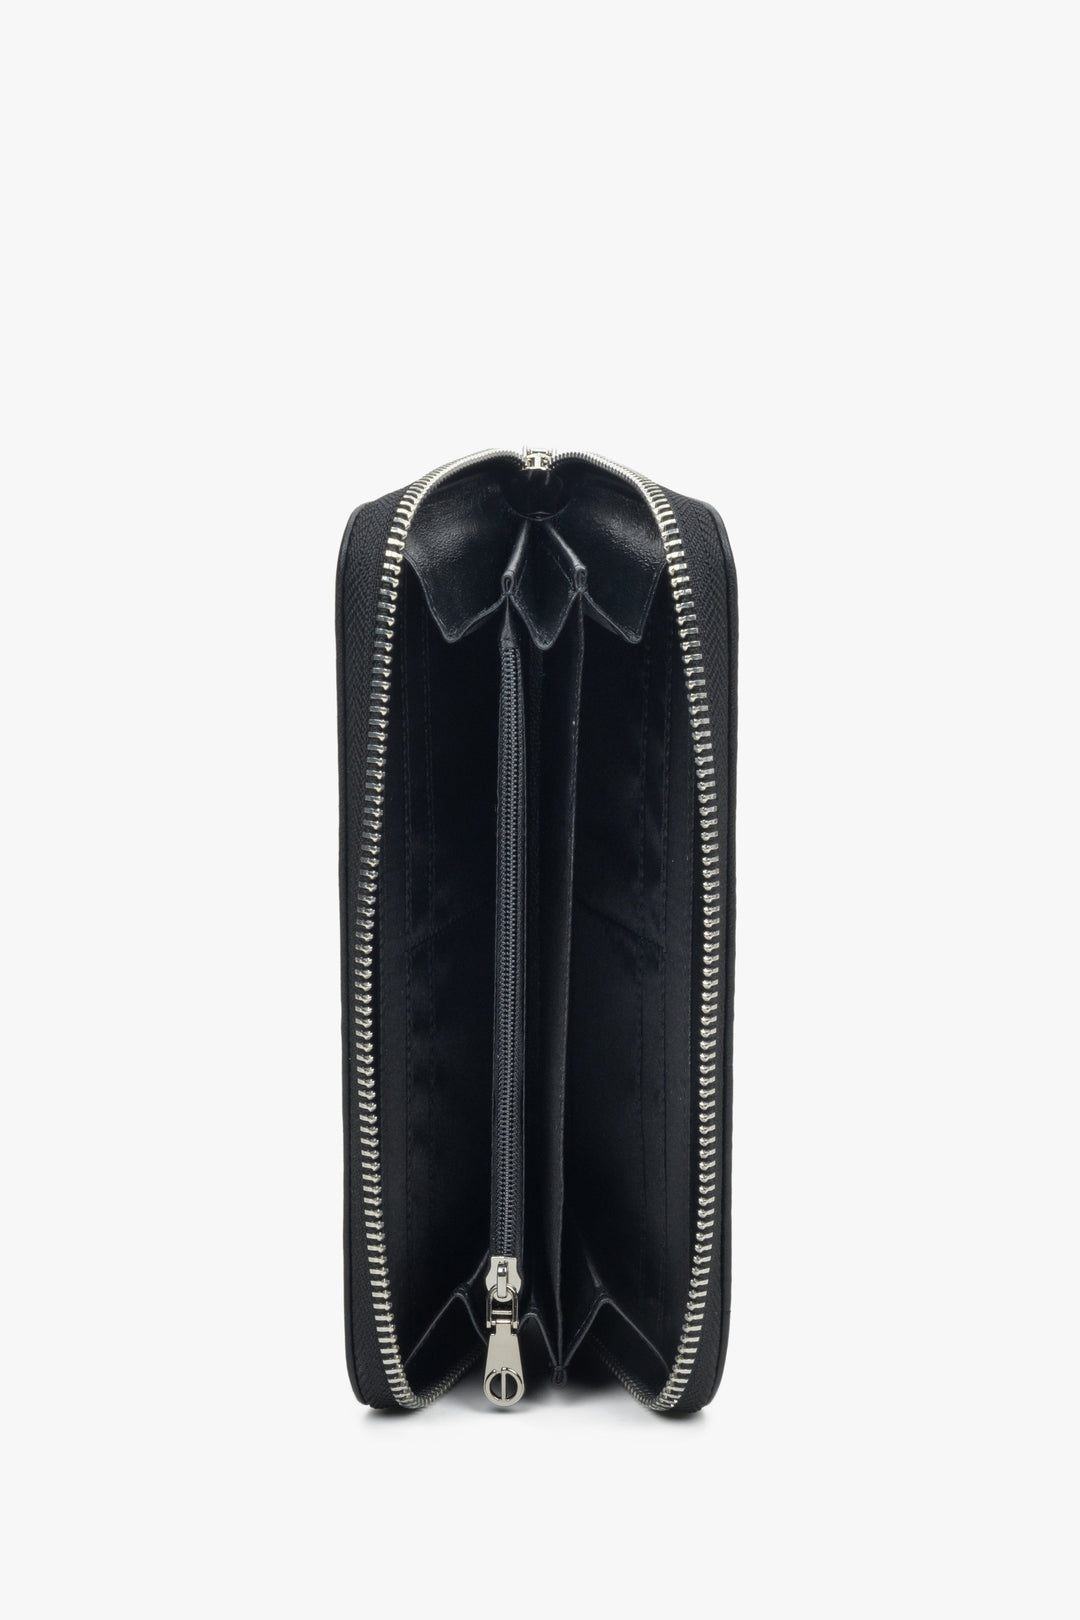 Damski duży portfel w kolorze czarnym marki Estro z suwakiem - wnętrze.